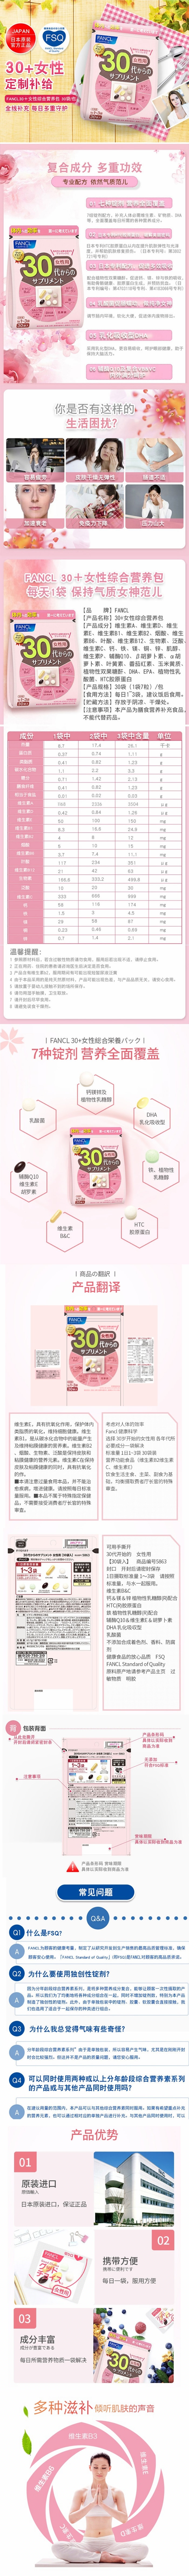 【年中大促】【日本直邮】日本FANCL芳珂 30岁30代以上女性专用保健营养品  30袋